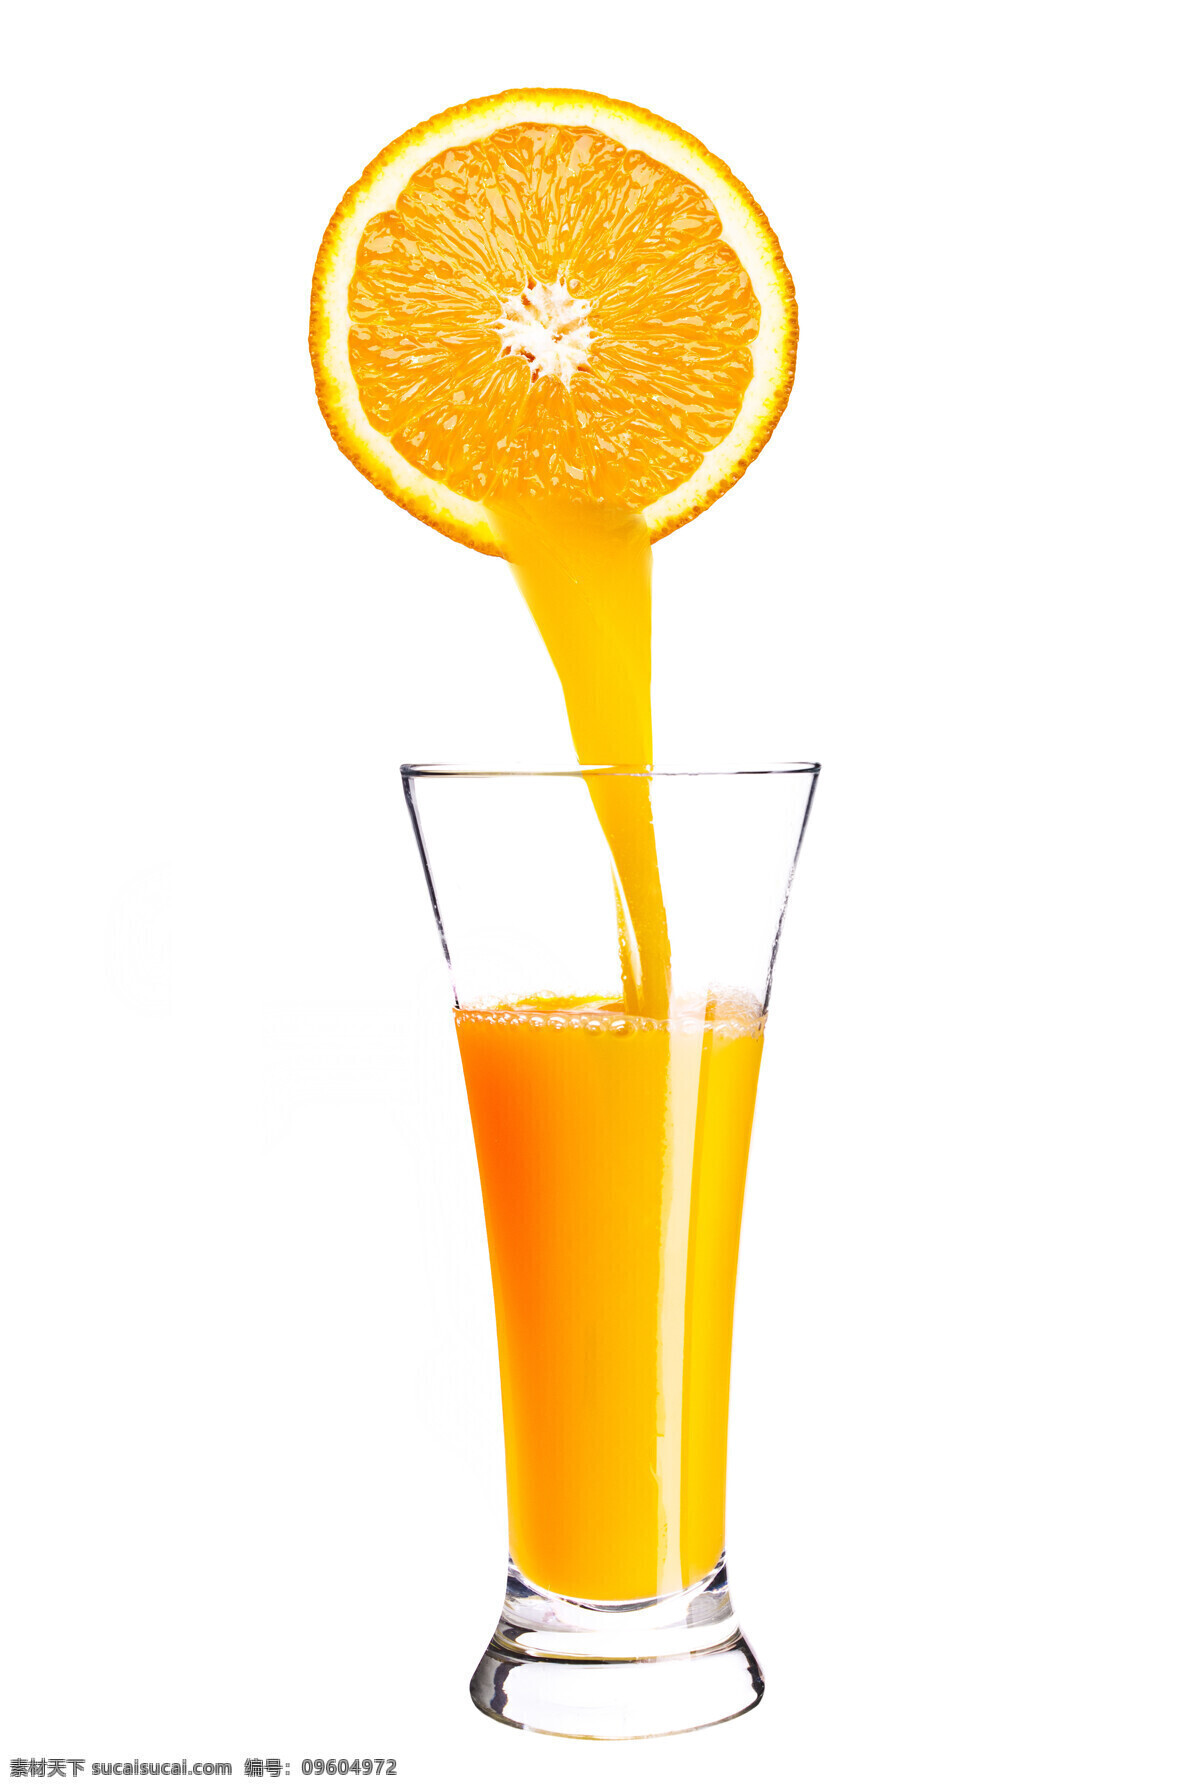 橙汁 果汁 鲜榨果汁 桔子汁 芒果汁 营养美味 水果 果汁饮料 餐饮美食 饮料酒水